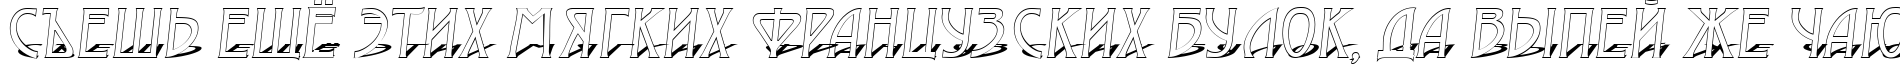 Пример написания шрифтом a_ModernoOtl3DSh текста на русском